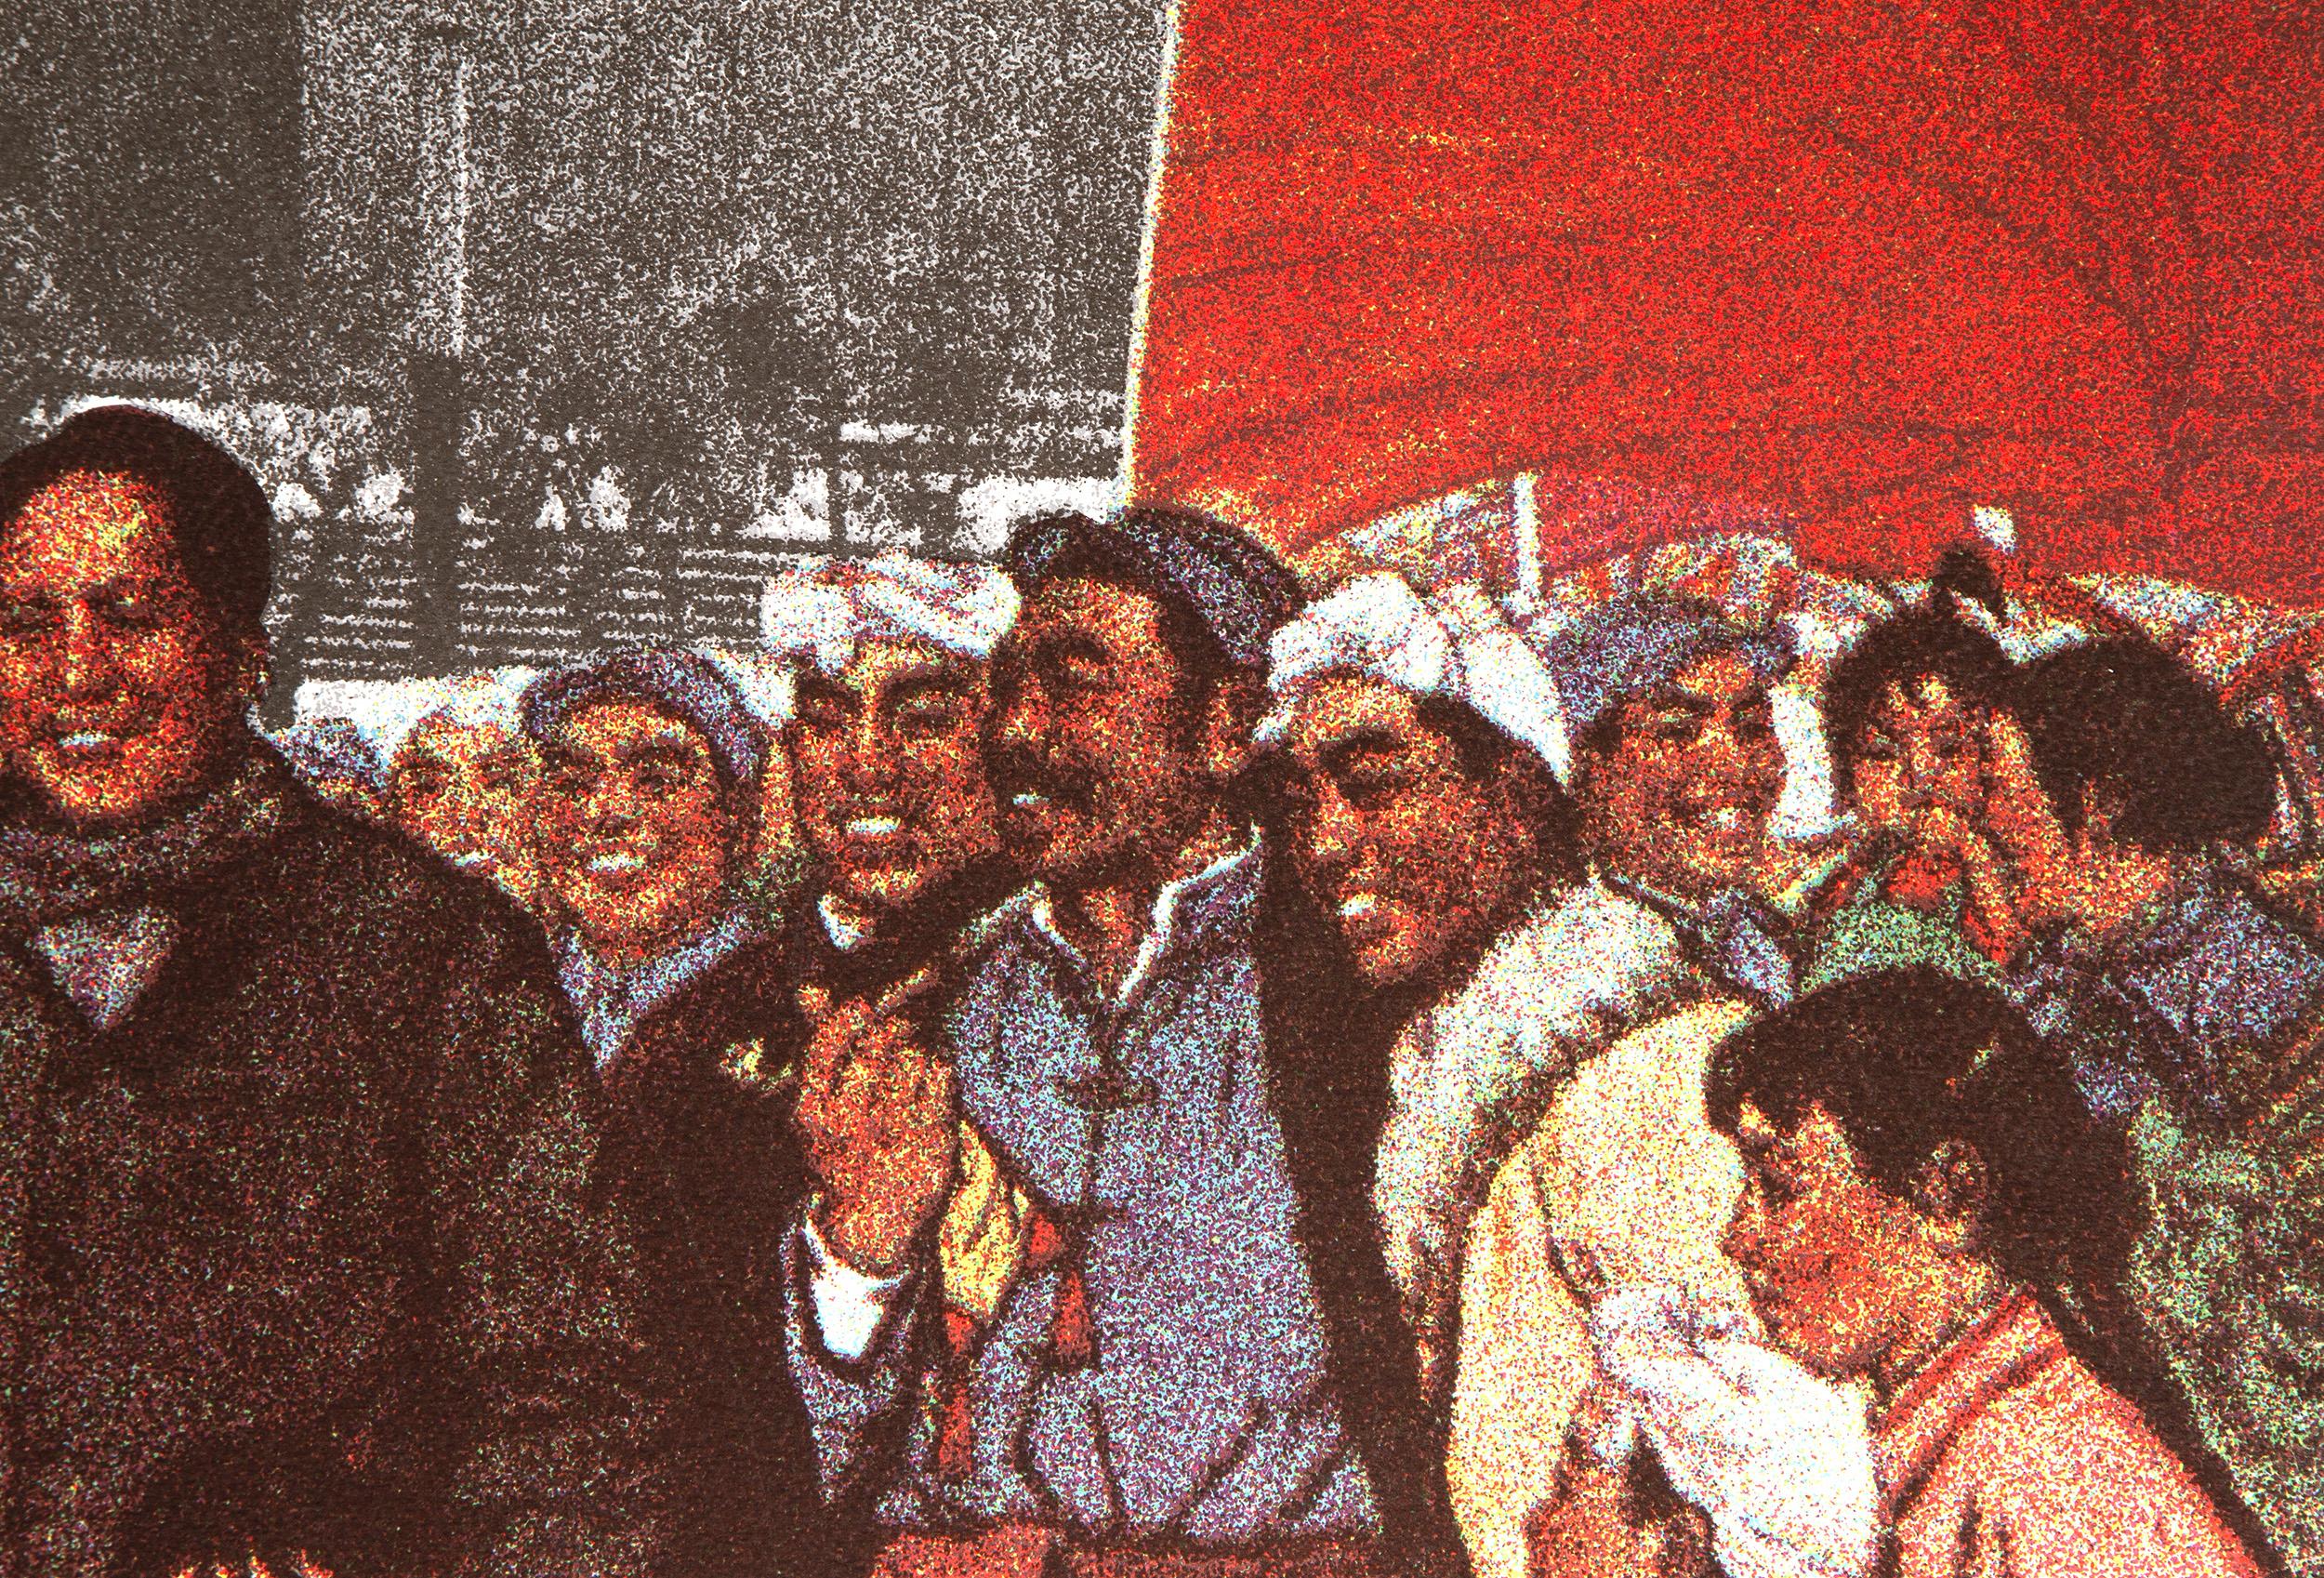 Mao's Weltreise - Jerusalem
Erró, Isländisch (1932)
Datum: 1975
Siebdruck, signiert, nummeriert und datiert mit Bleistift
Auflage von 99/150
Größe: 31,25 x 23,5 Zoll (79,38 x 59,69 cm)